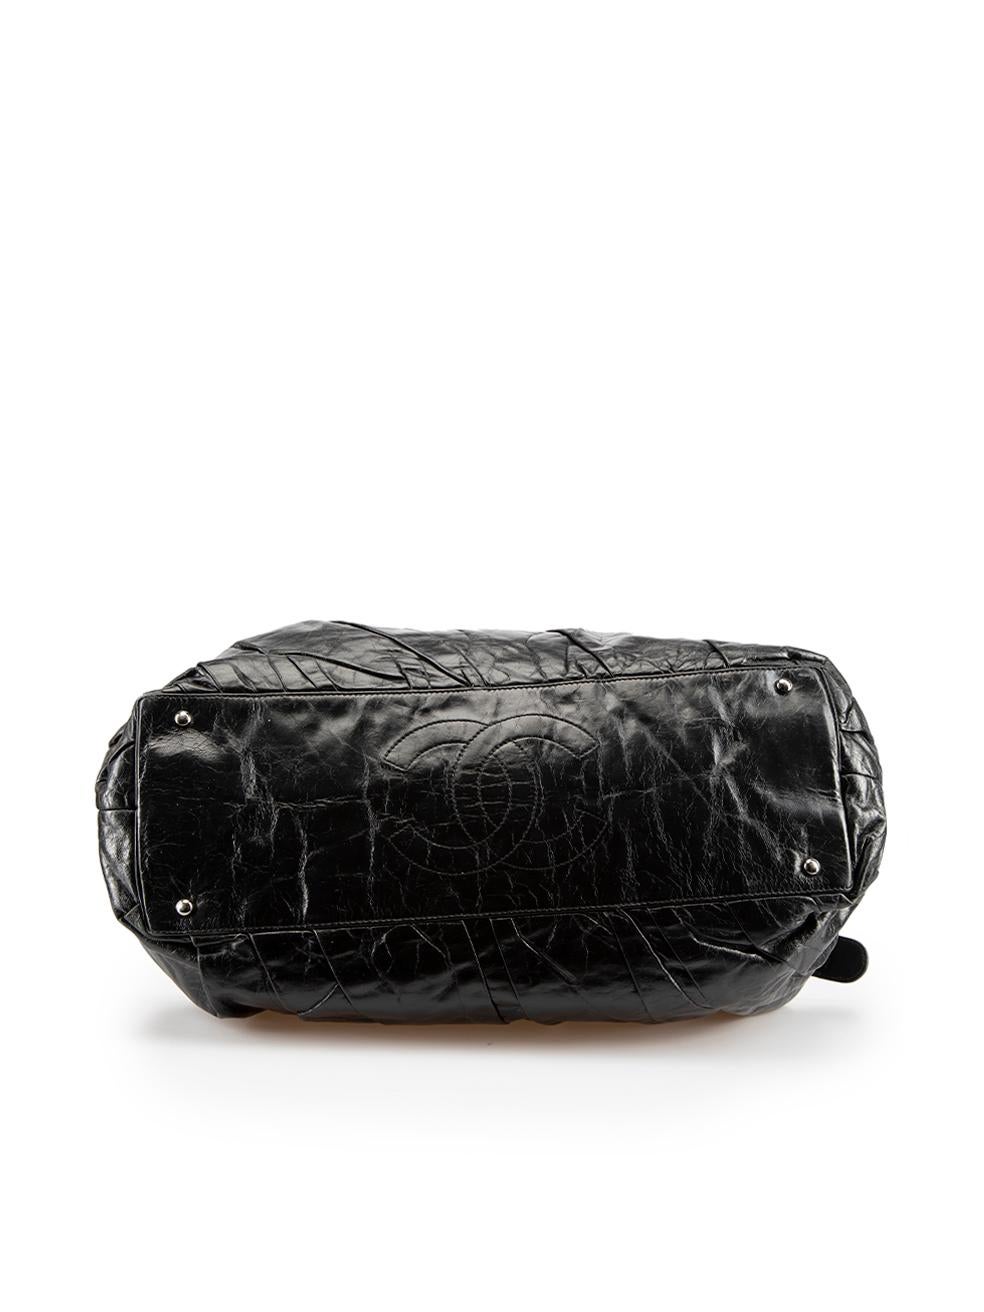 Women's Chanel 2009-2010 Black East West Twisted Glazed Shoulder Bag For Sale